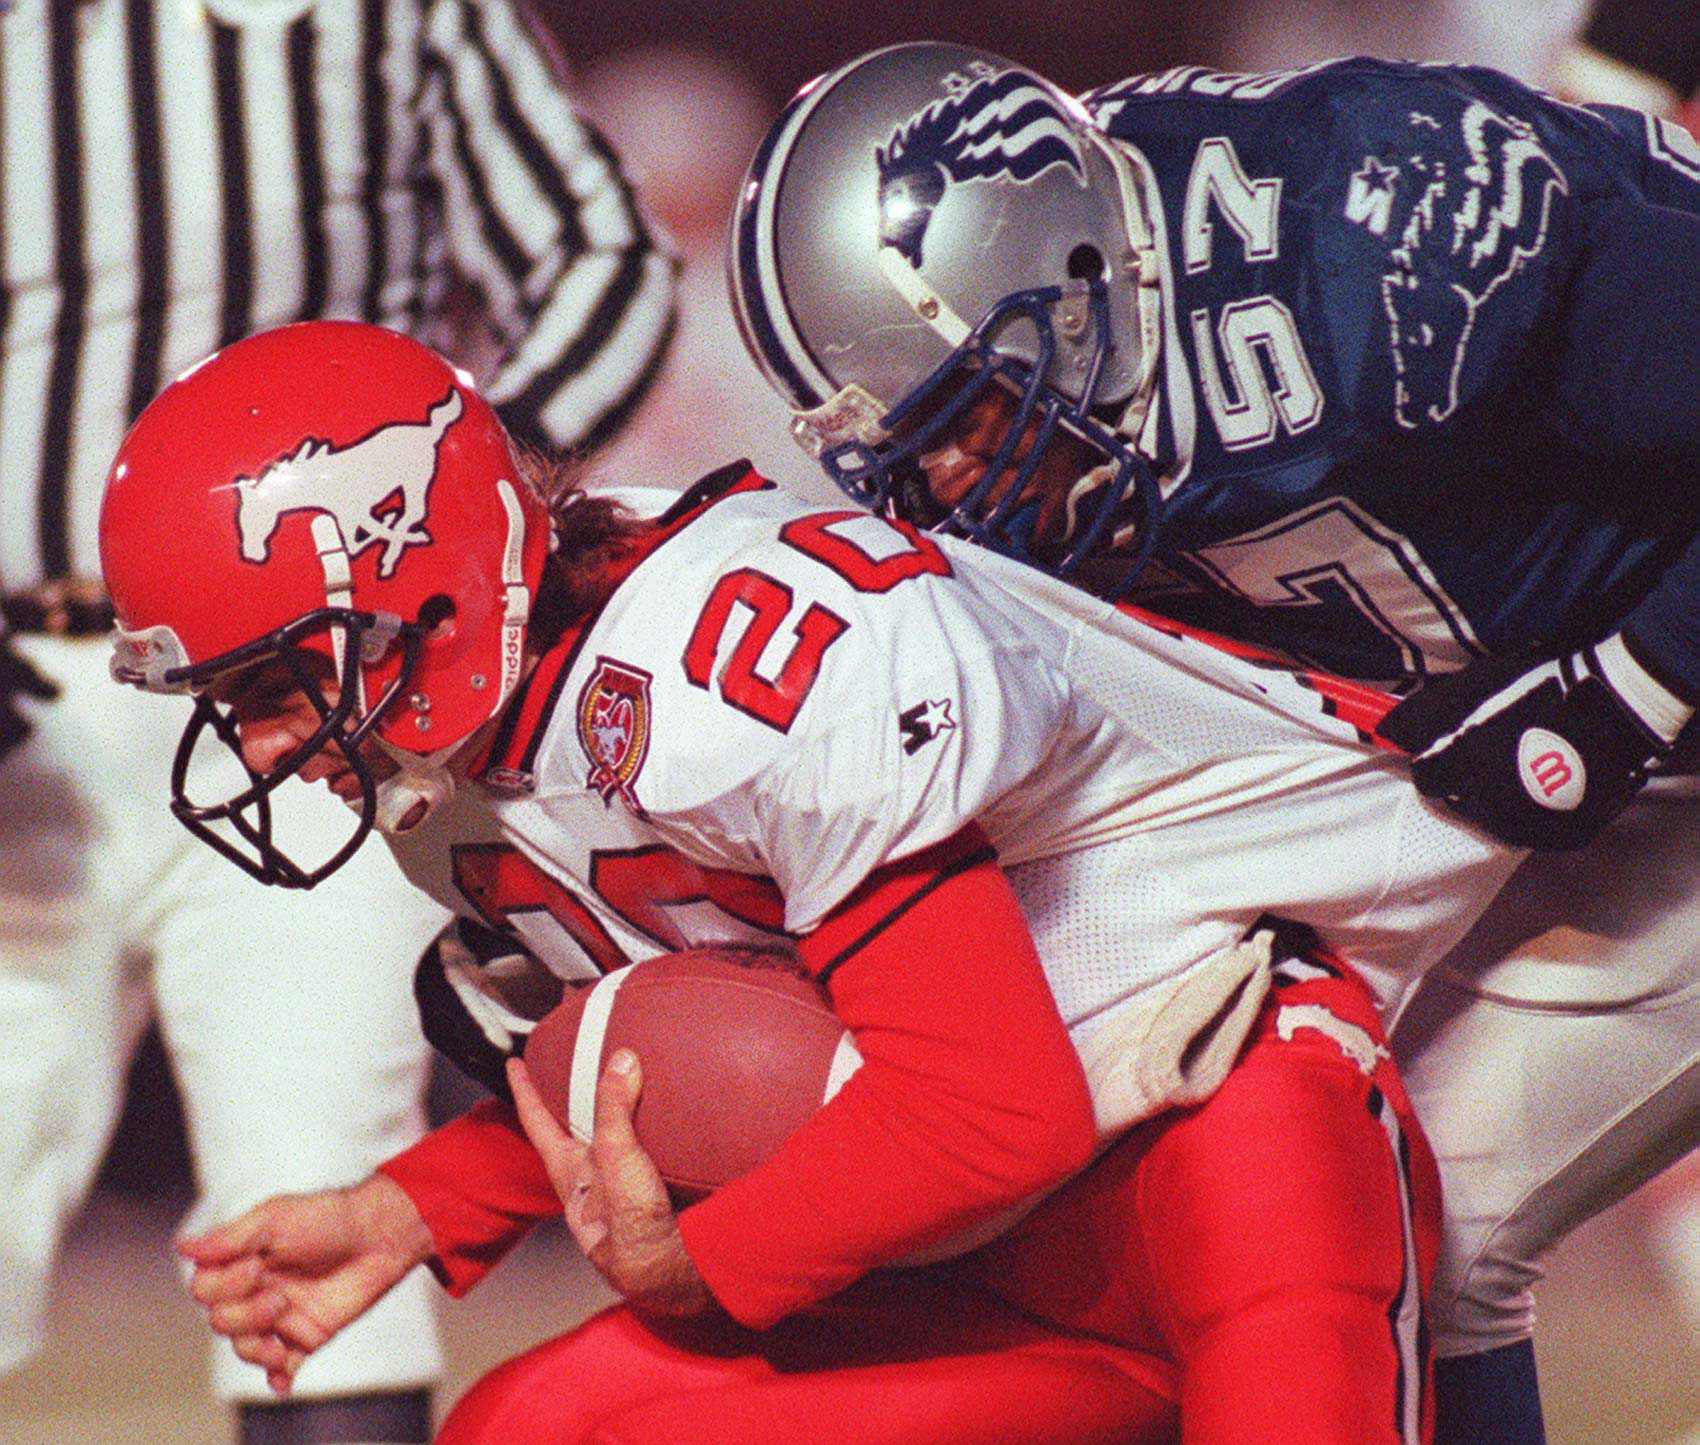 Baltimore Stallions defender O.J. Brigance sacks Calgary quarterback Doug FLutie during the 1995 Grey Cup.